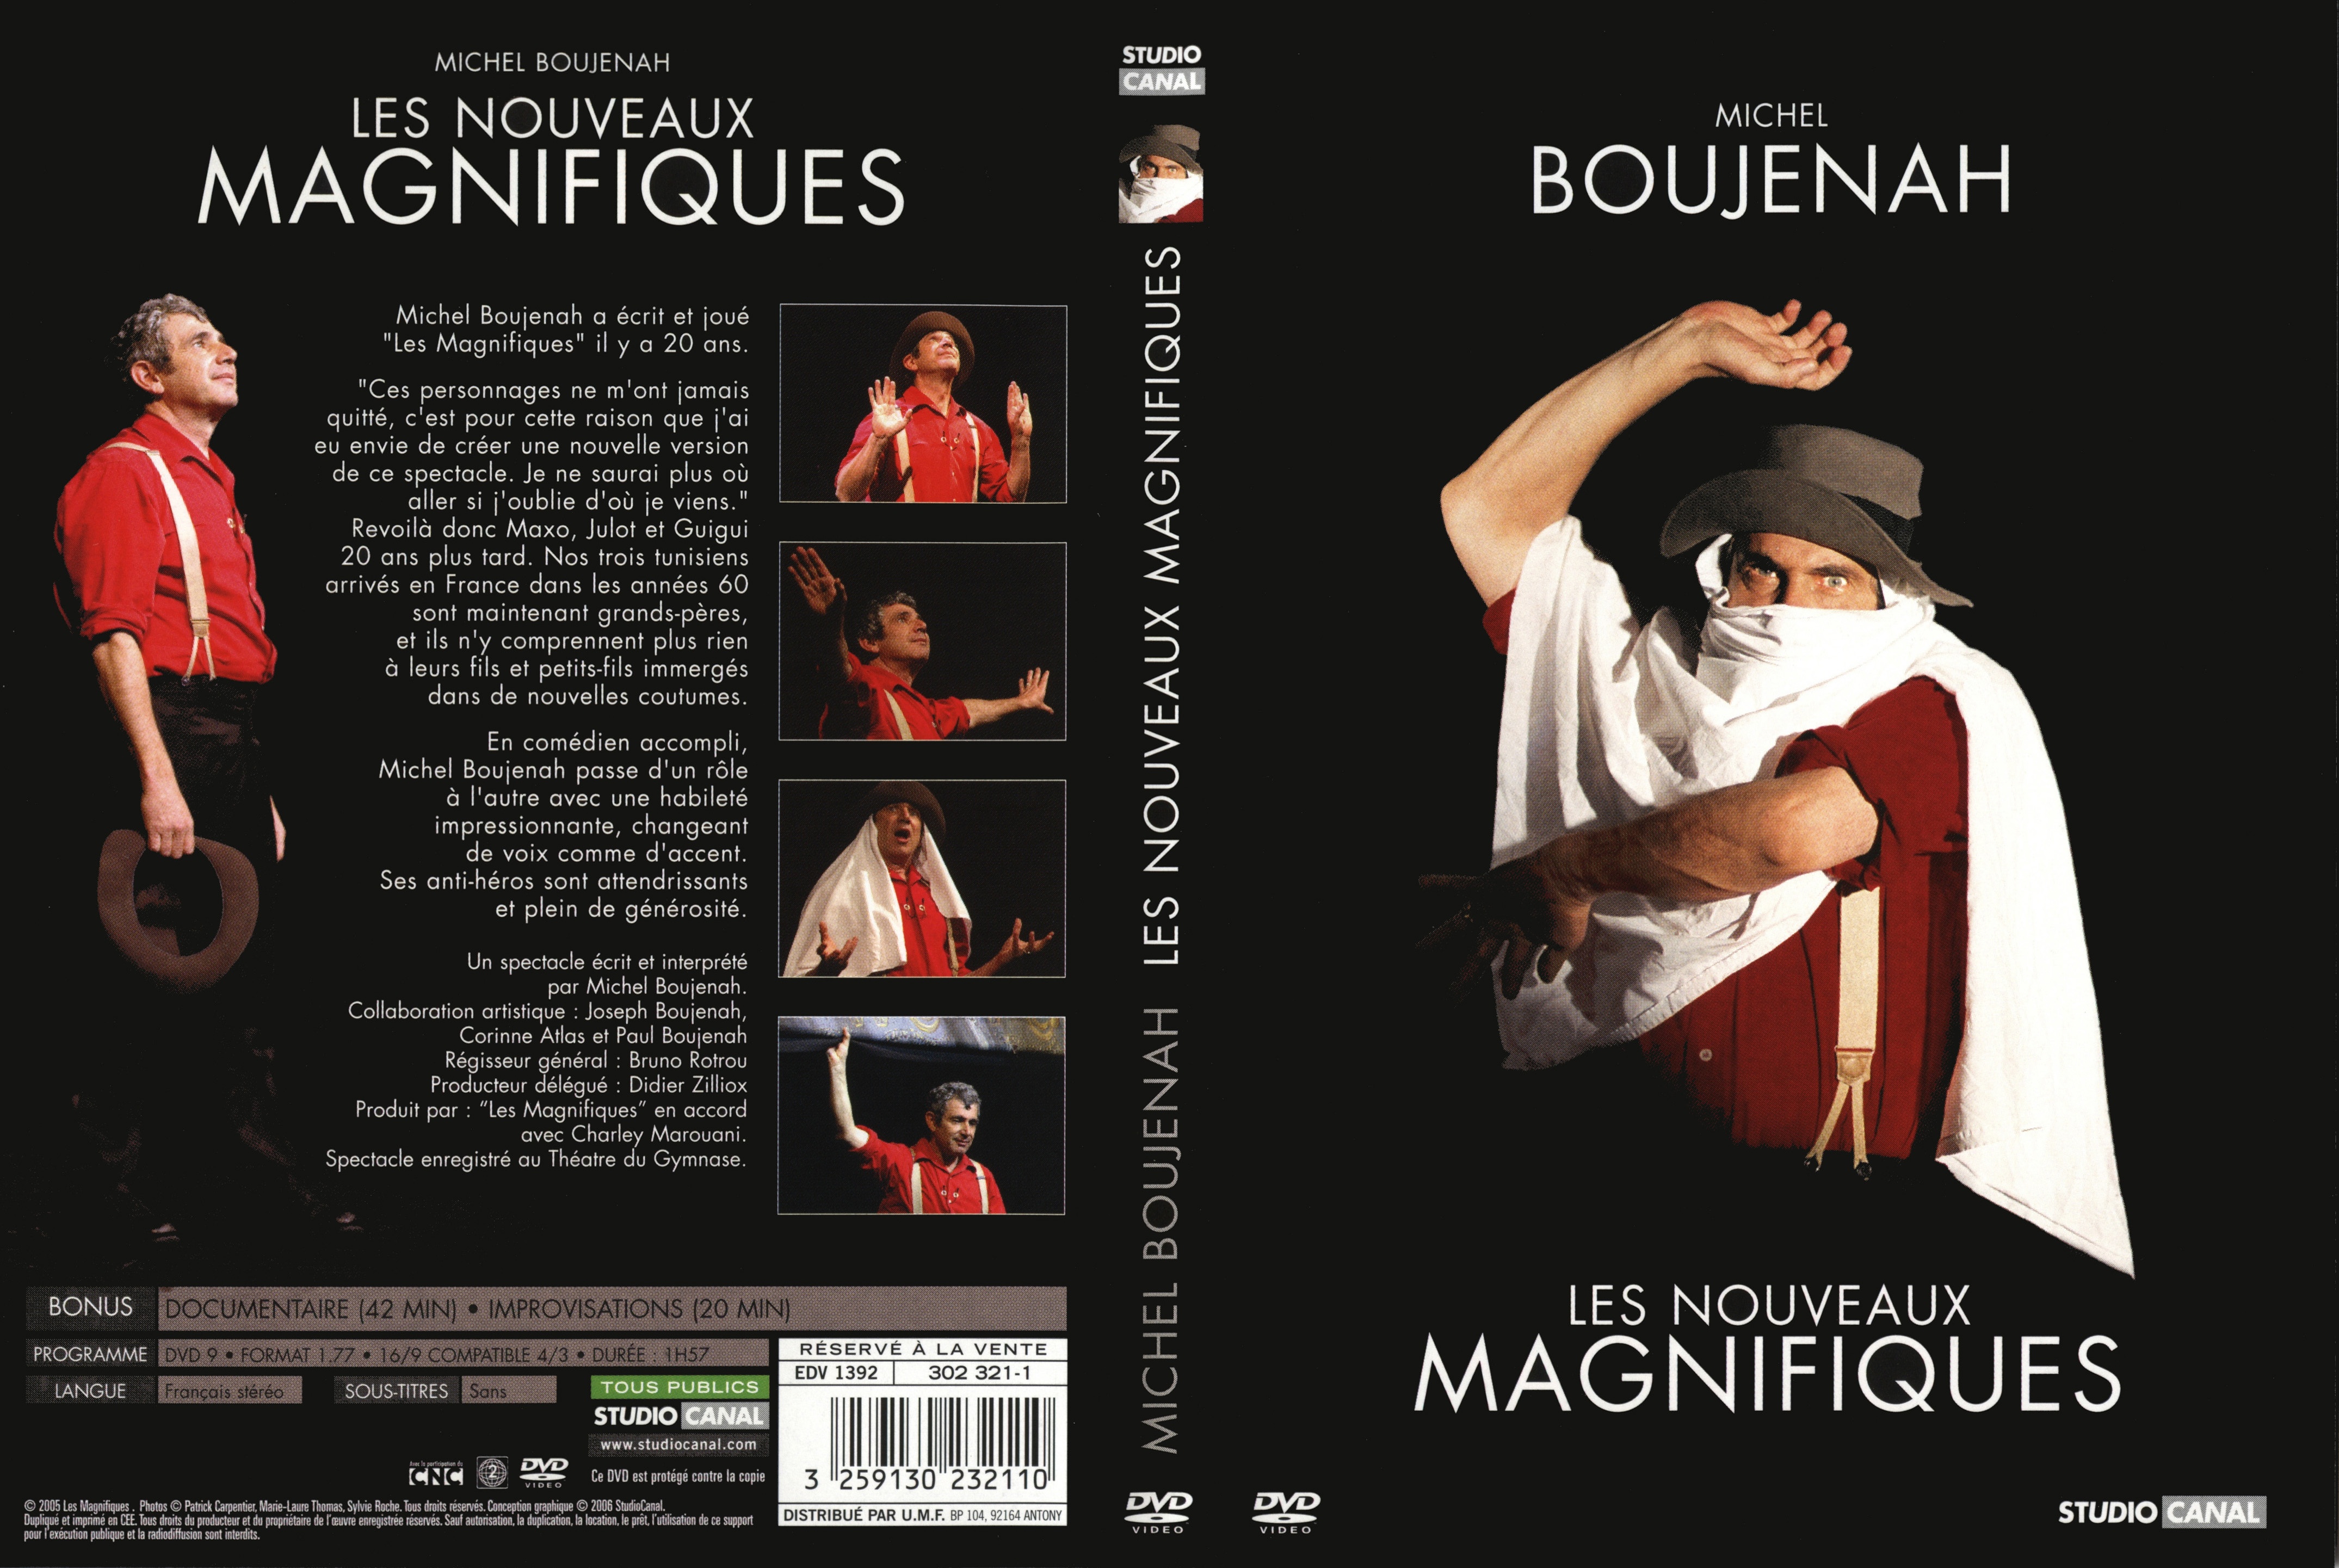 Jaquette DVD Michel Boujenah les nouveaux magnifiques